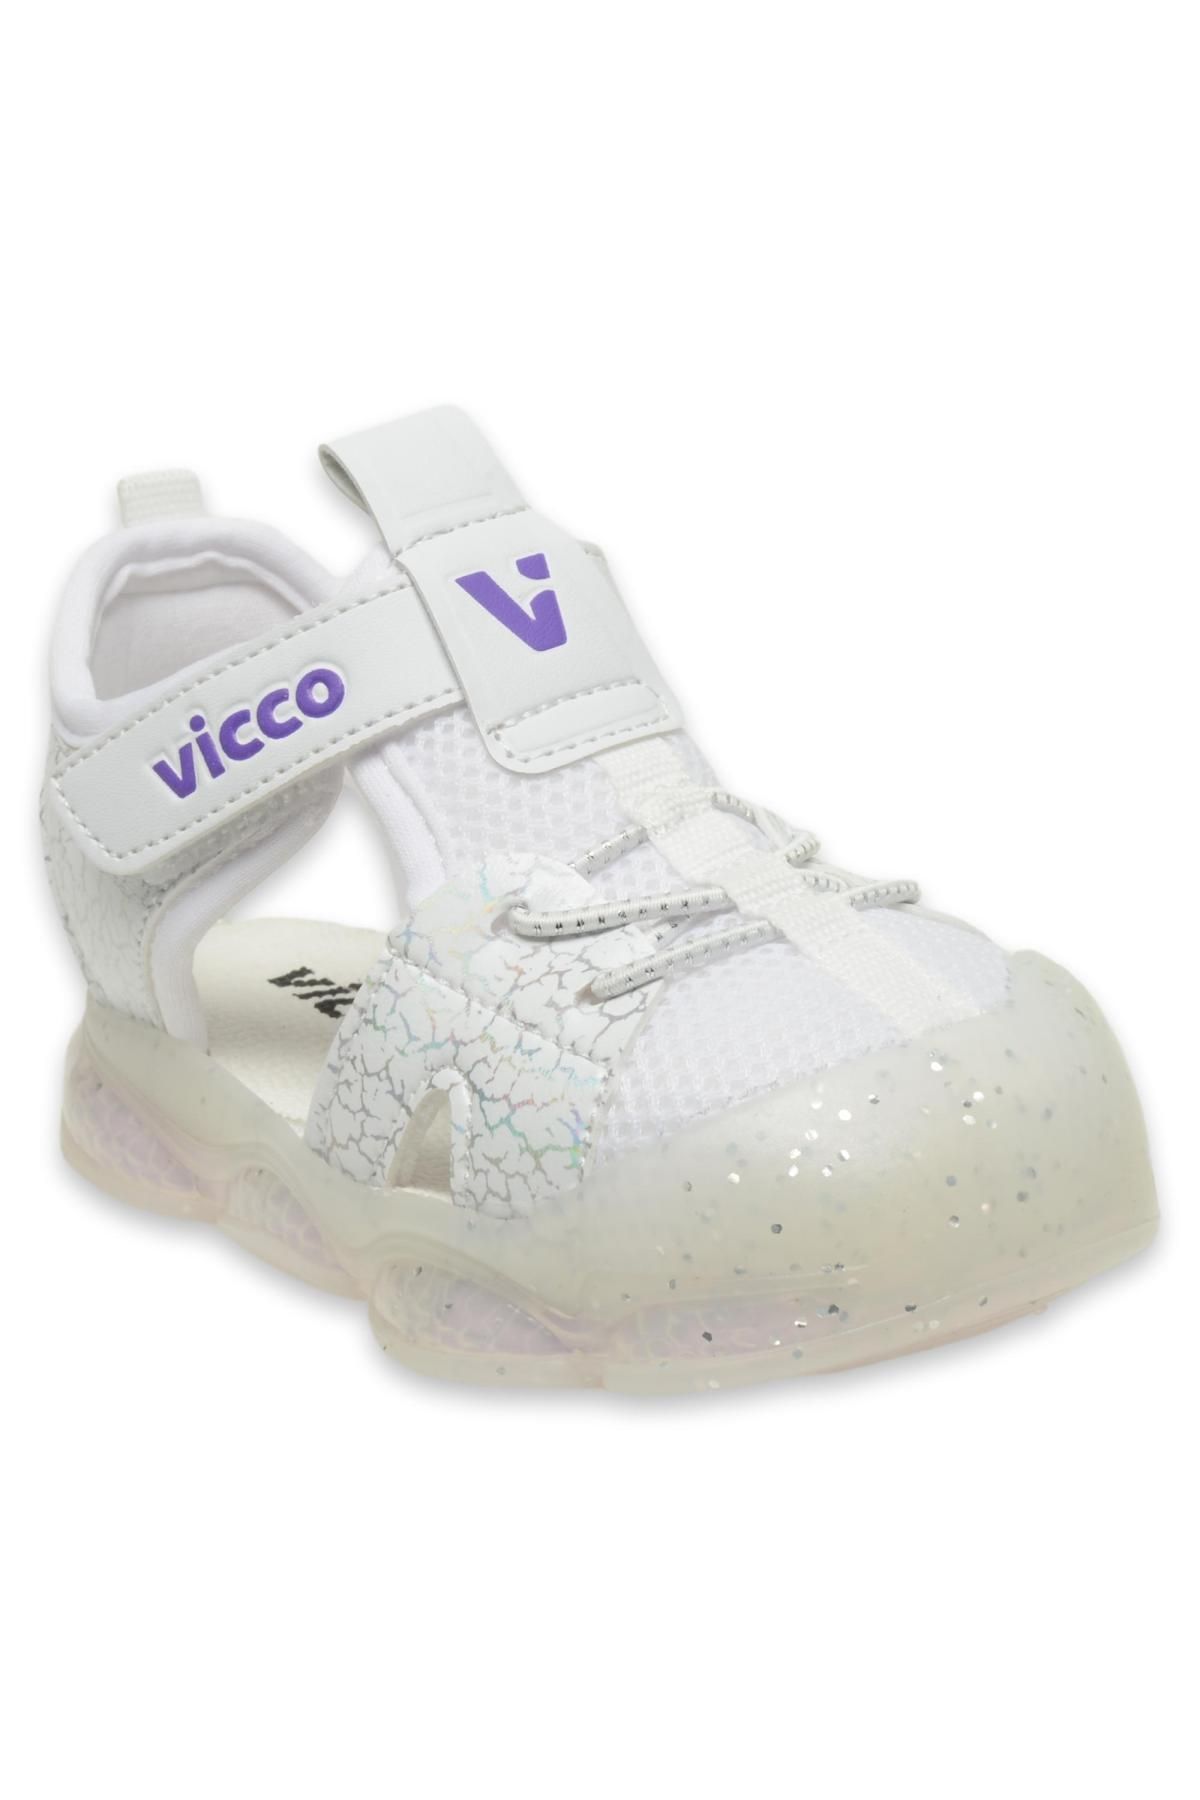 Vicco 321.B24Y211 Bebe Phylon Işıklı Beyaz Çocuk Sandalet